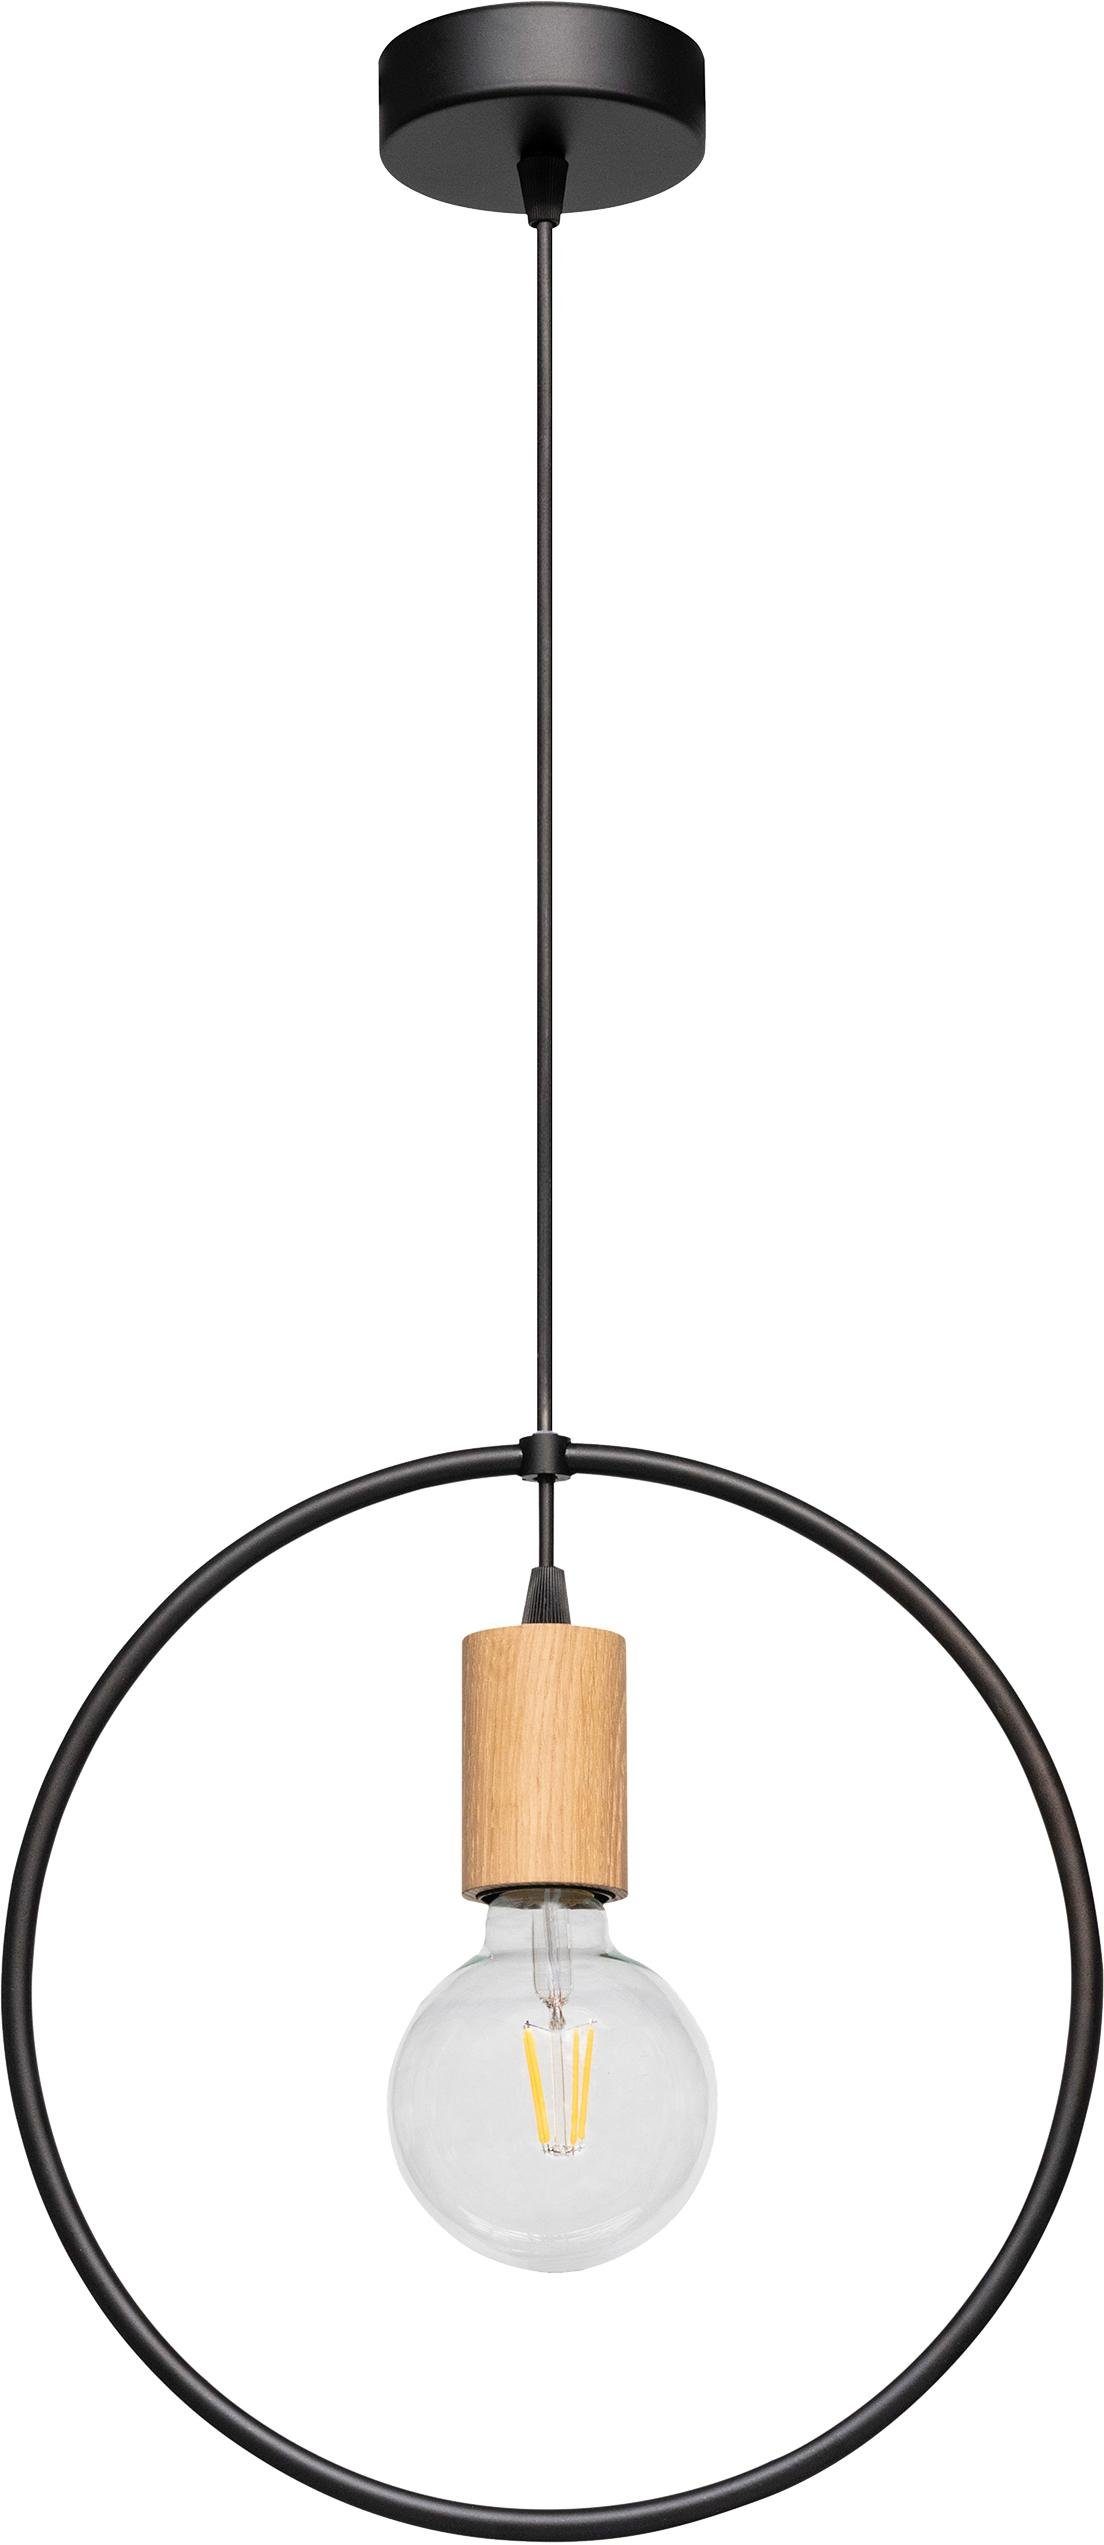 spot light hanglamp carsten wood hanglamp, moderne lamp van metaal en eikenhout zwart